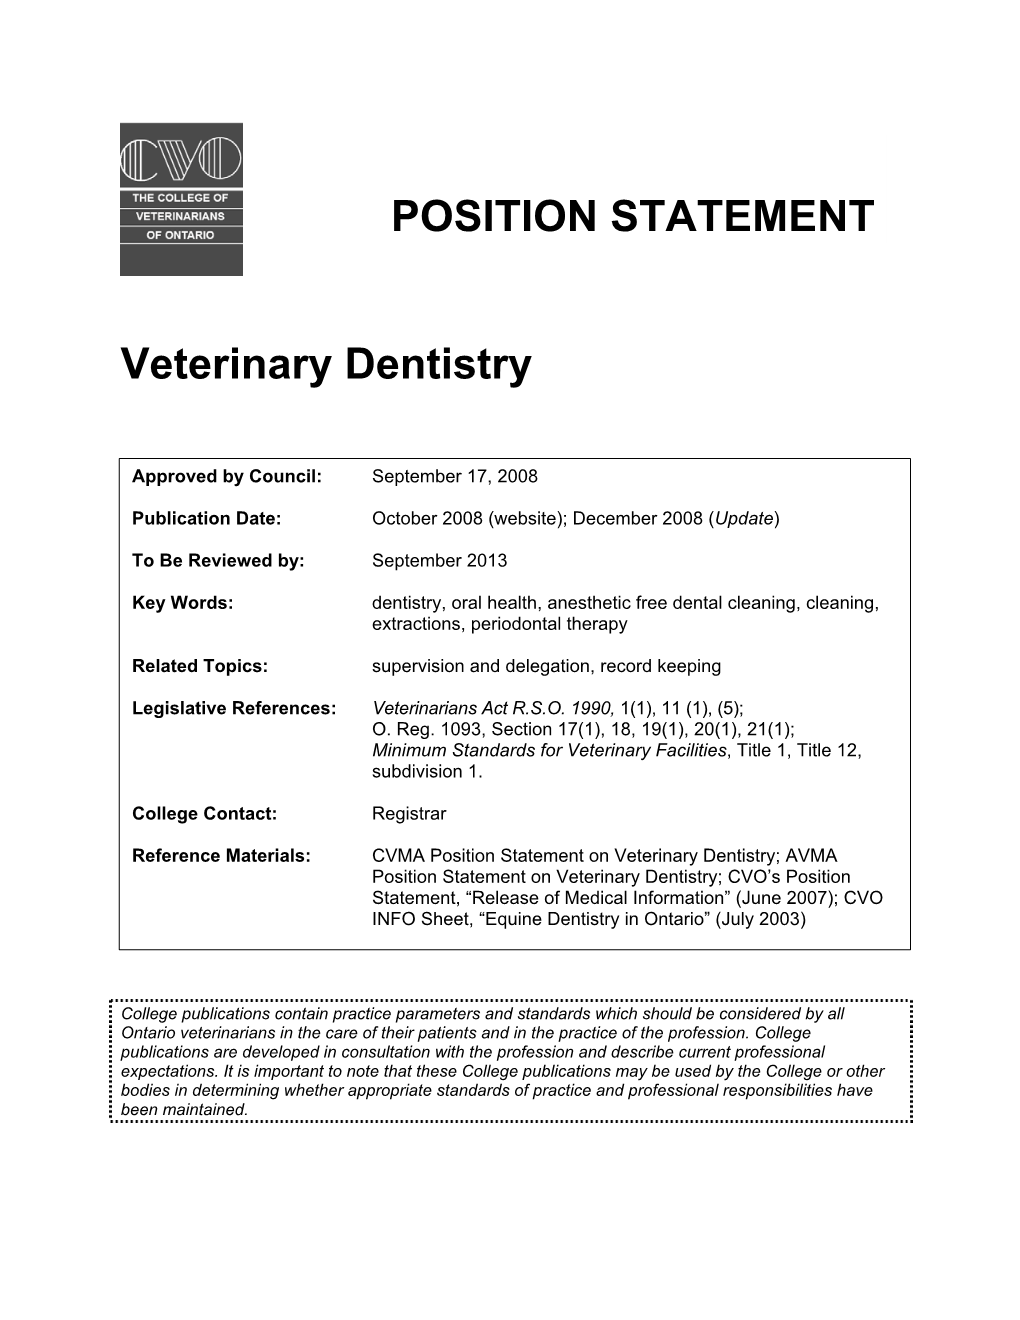 CVO's Position on Veterinary Dentistry